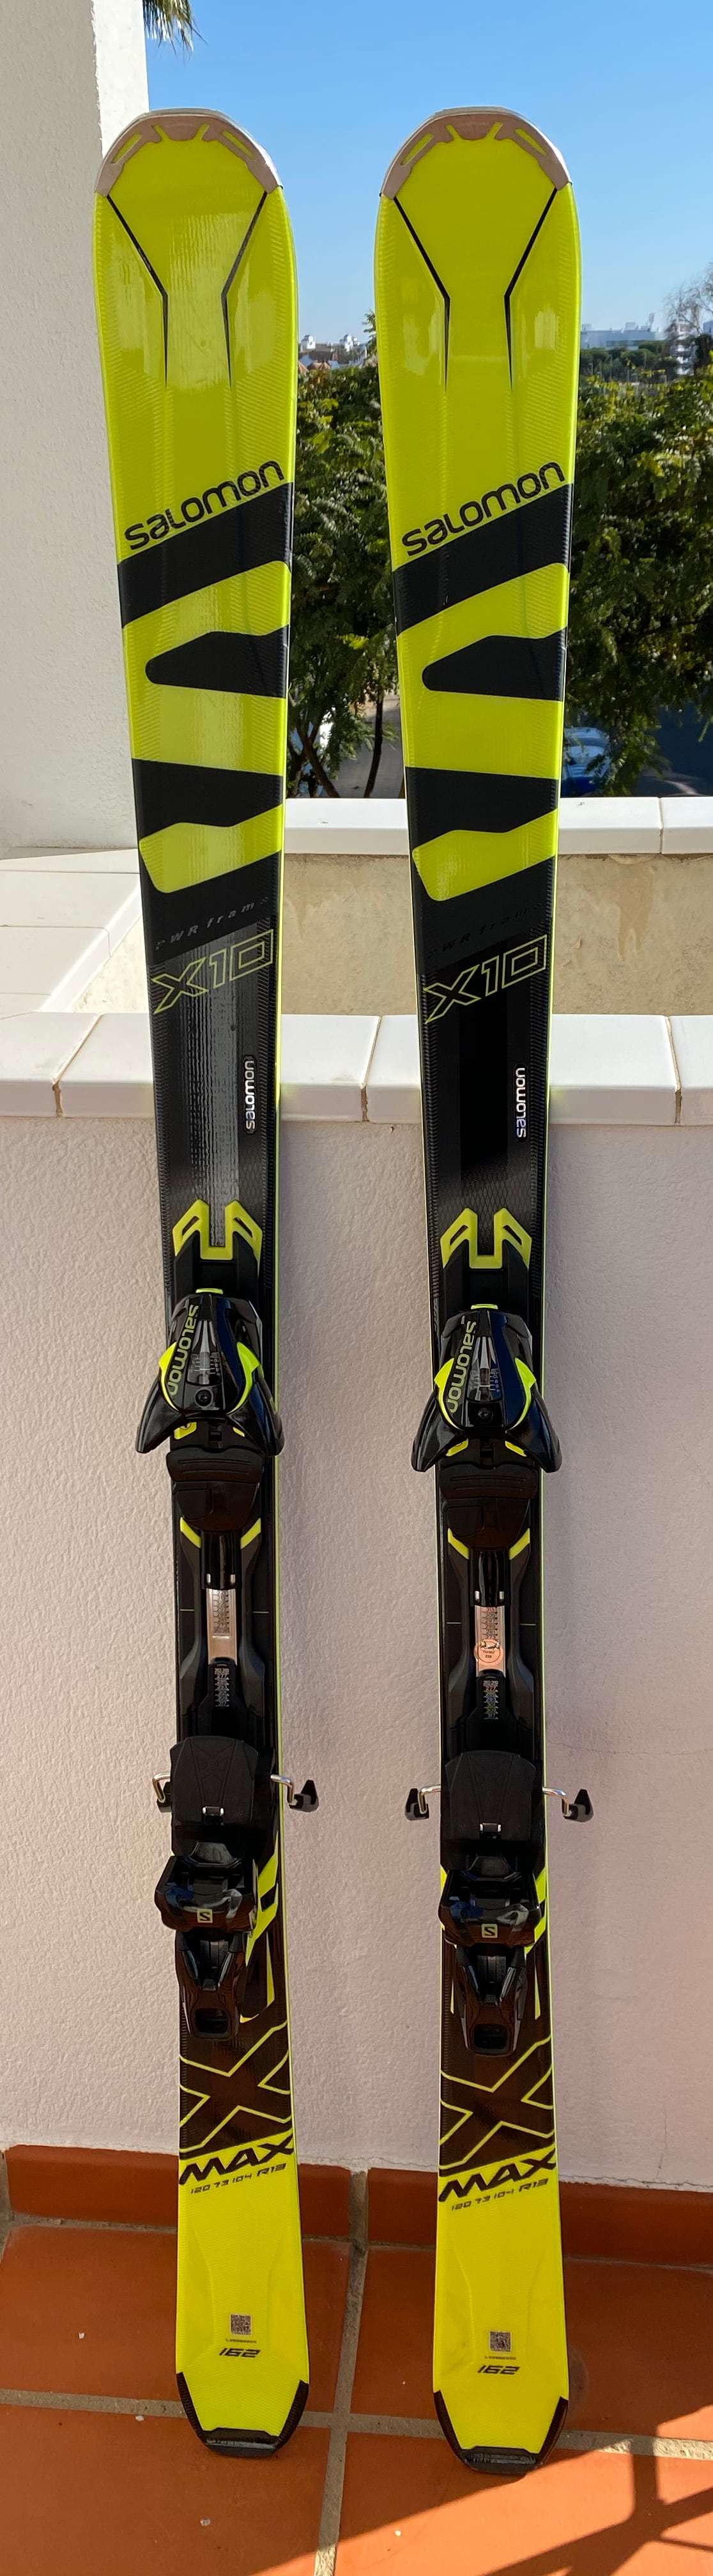 Vendo esquís Salomon X10 de 2018 impecables. 250€